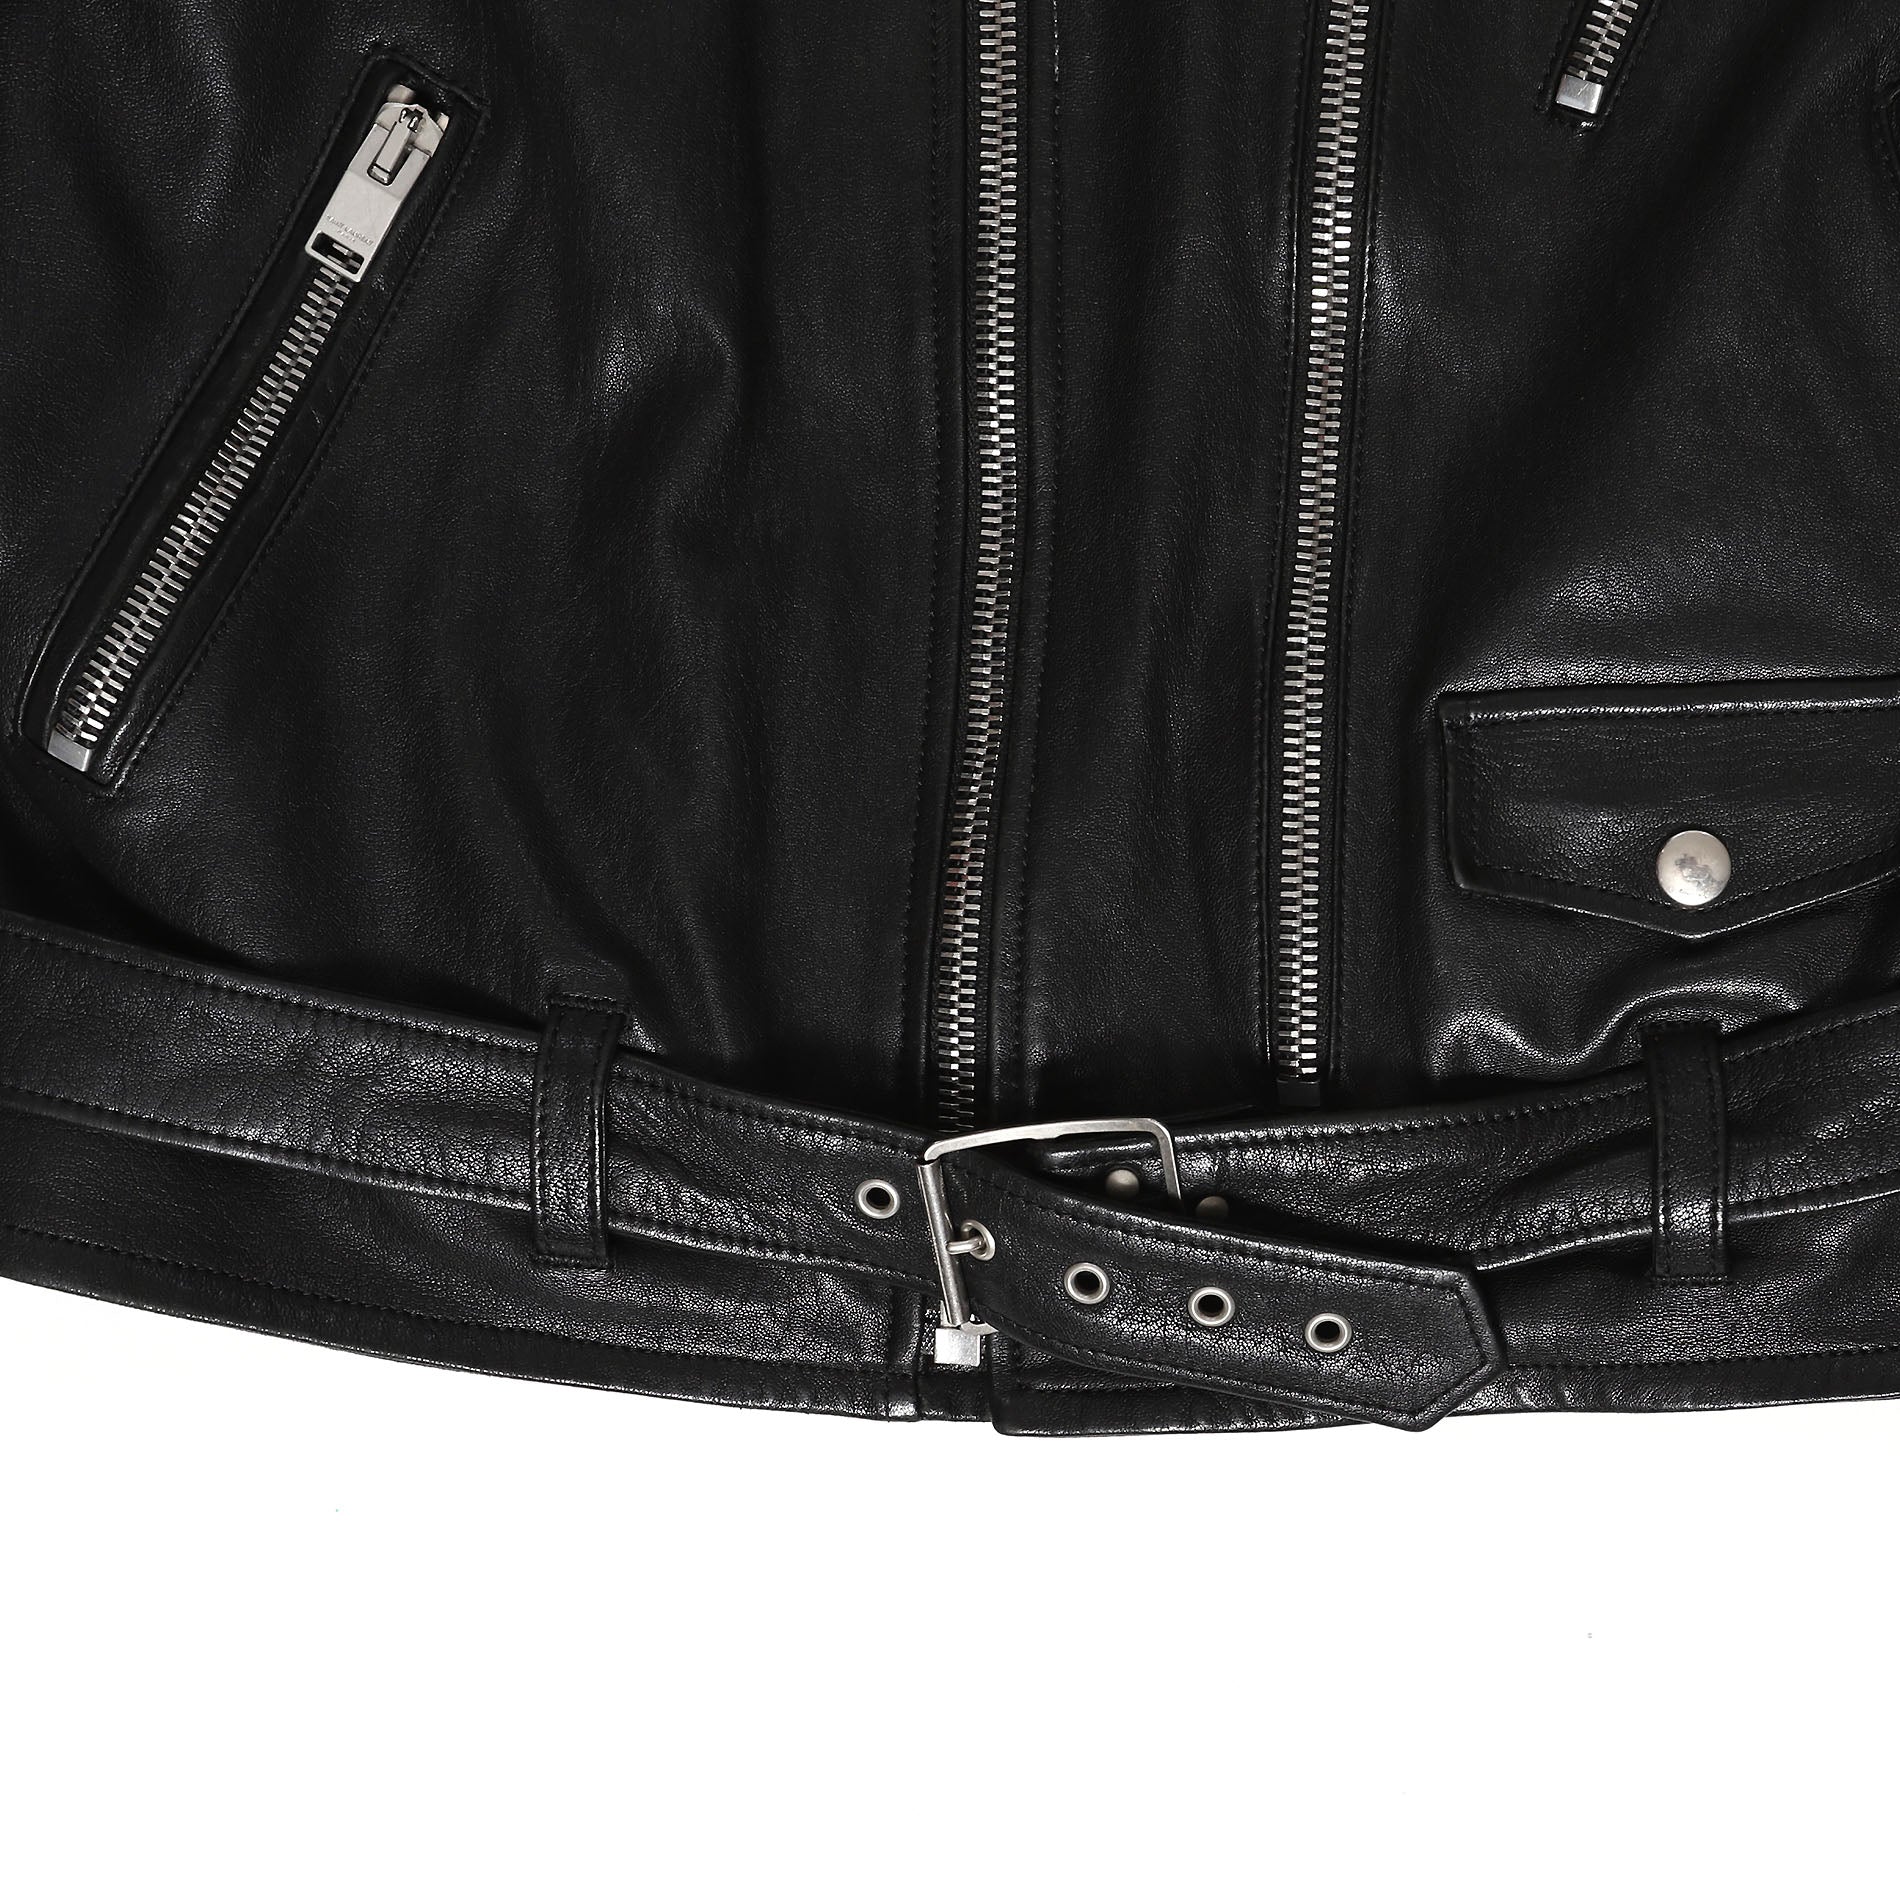 Saint Laurent Paris Black Calf Leather L17 Biker Jacket